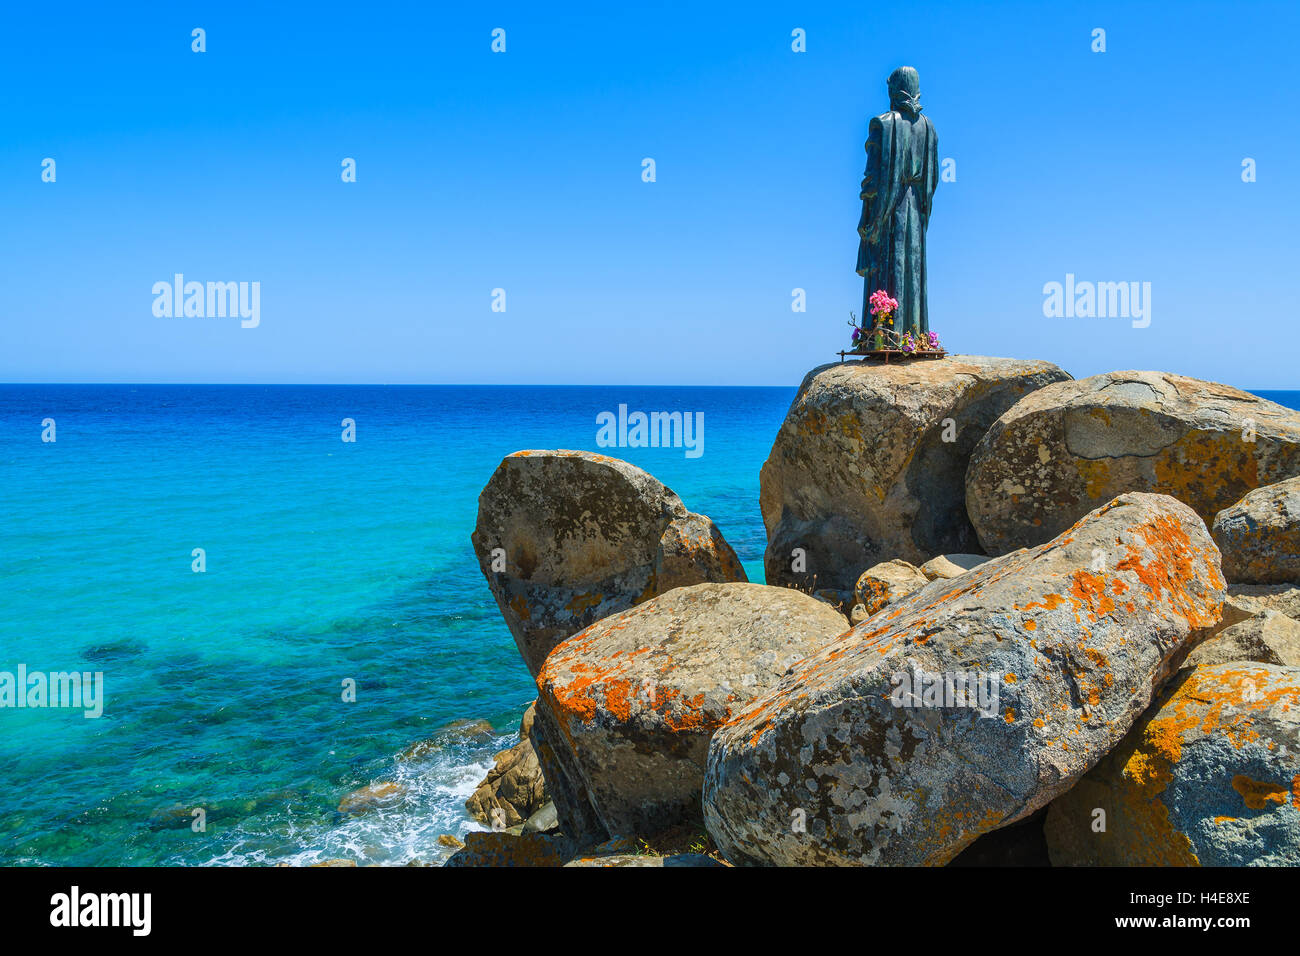 Jesus Christ sculpture on rocks at Cala Sinzias beach and sea view, Sardinia island, Italy Stock Photo